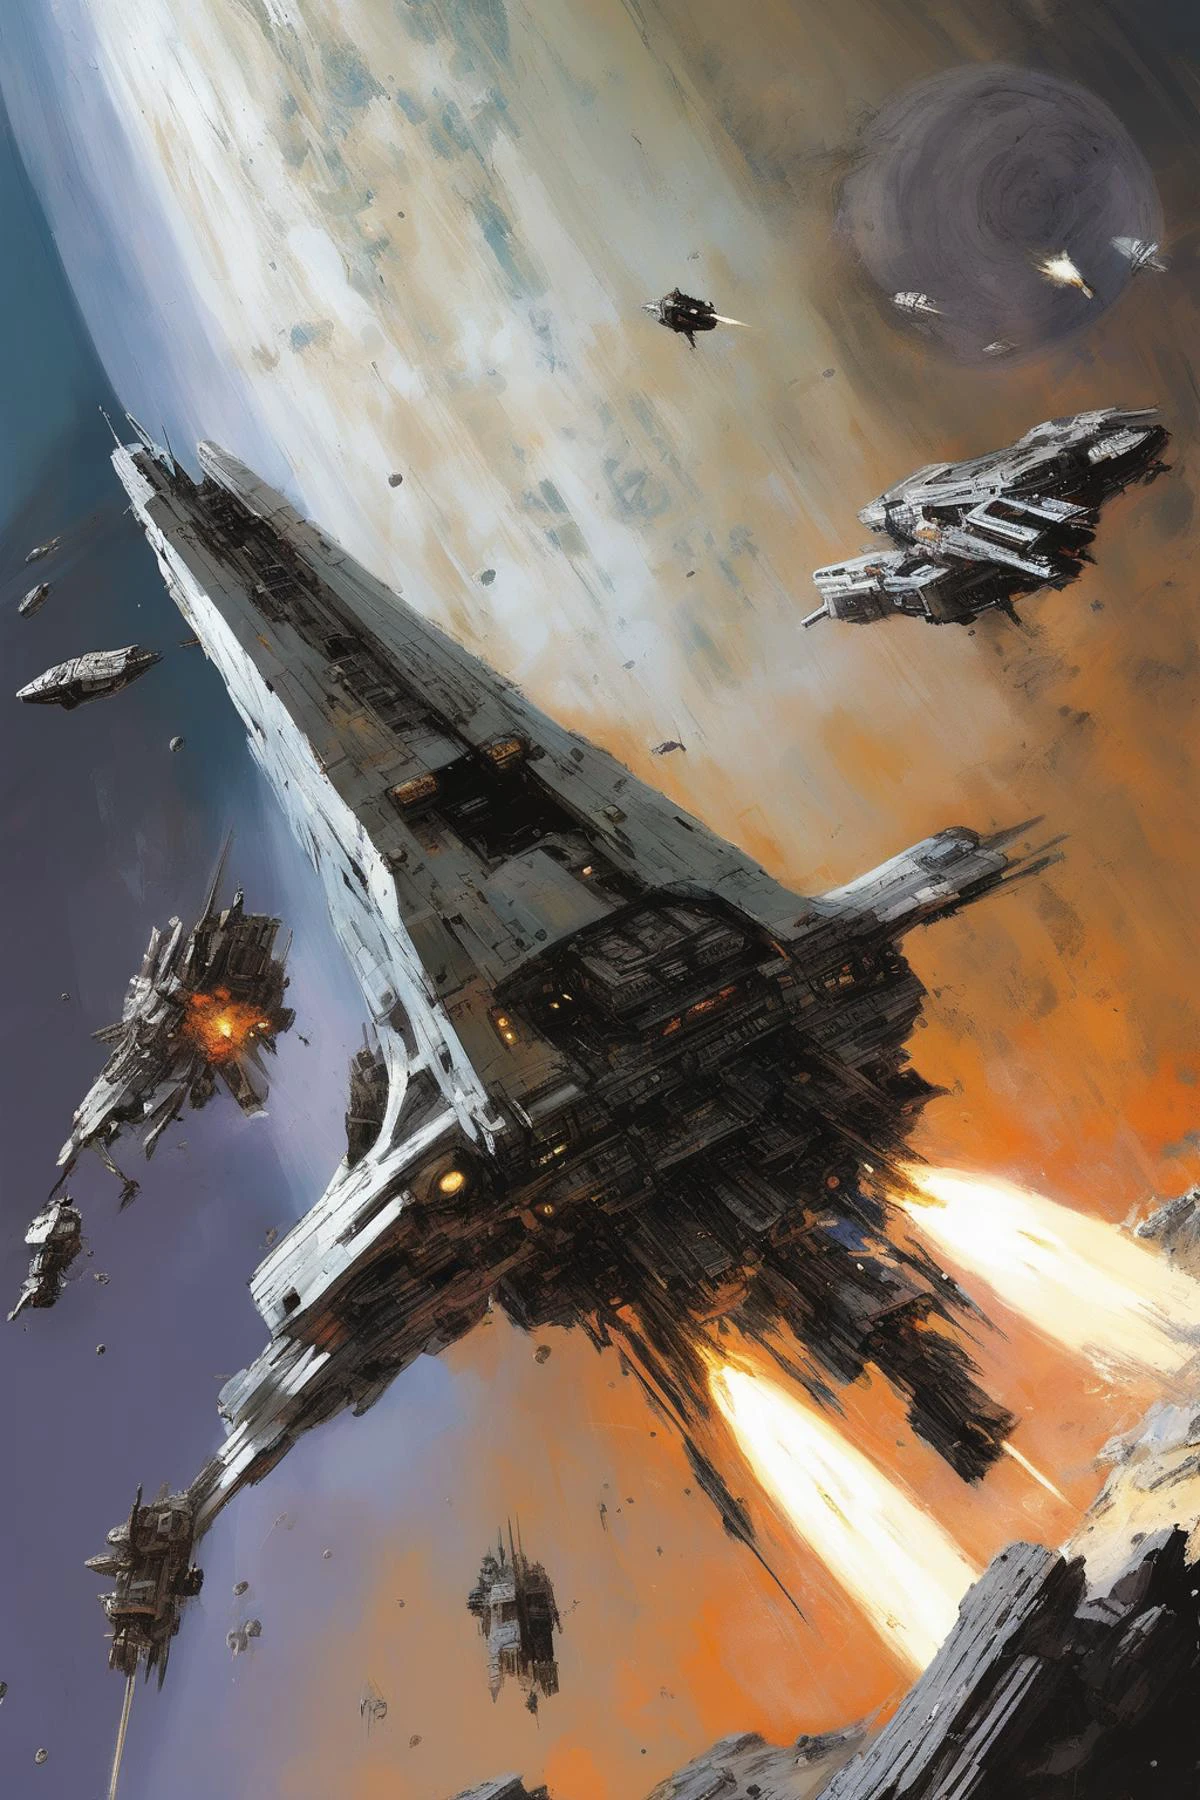 جون بيركي ستايل - سفينة فضاء مدرعة فضية تالفة تطلق أسلحة في معركة فضائية ضخمة, أمام كوكب متهالك بأسلوب جون بيركي من منظور ثلاثة أرباع